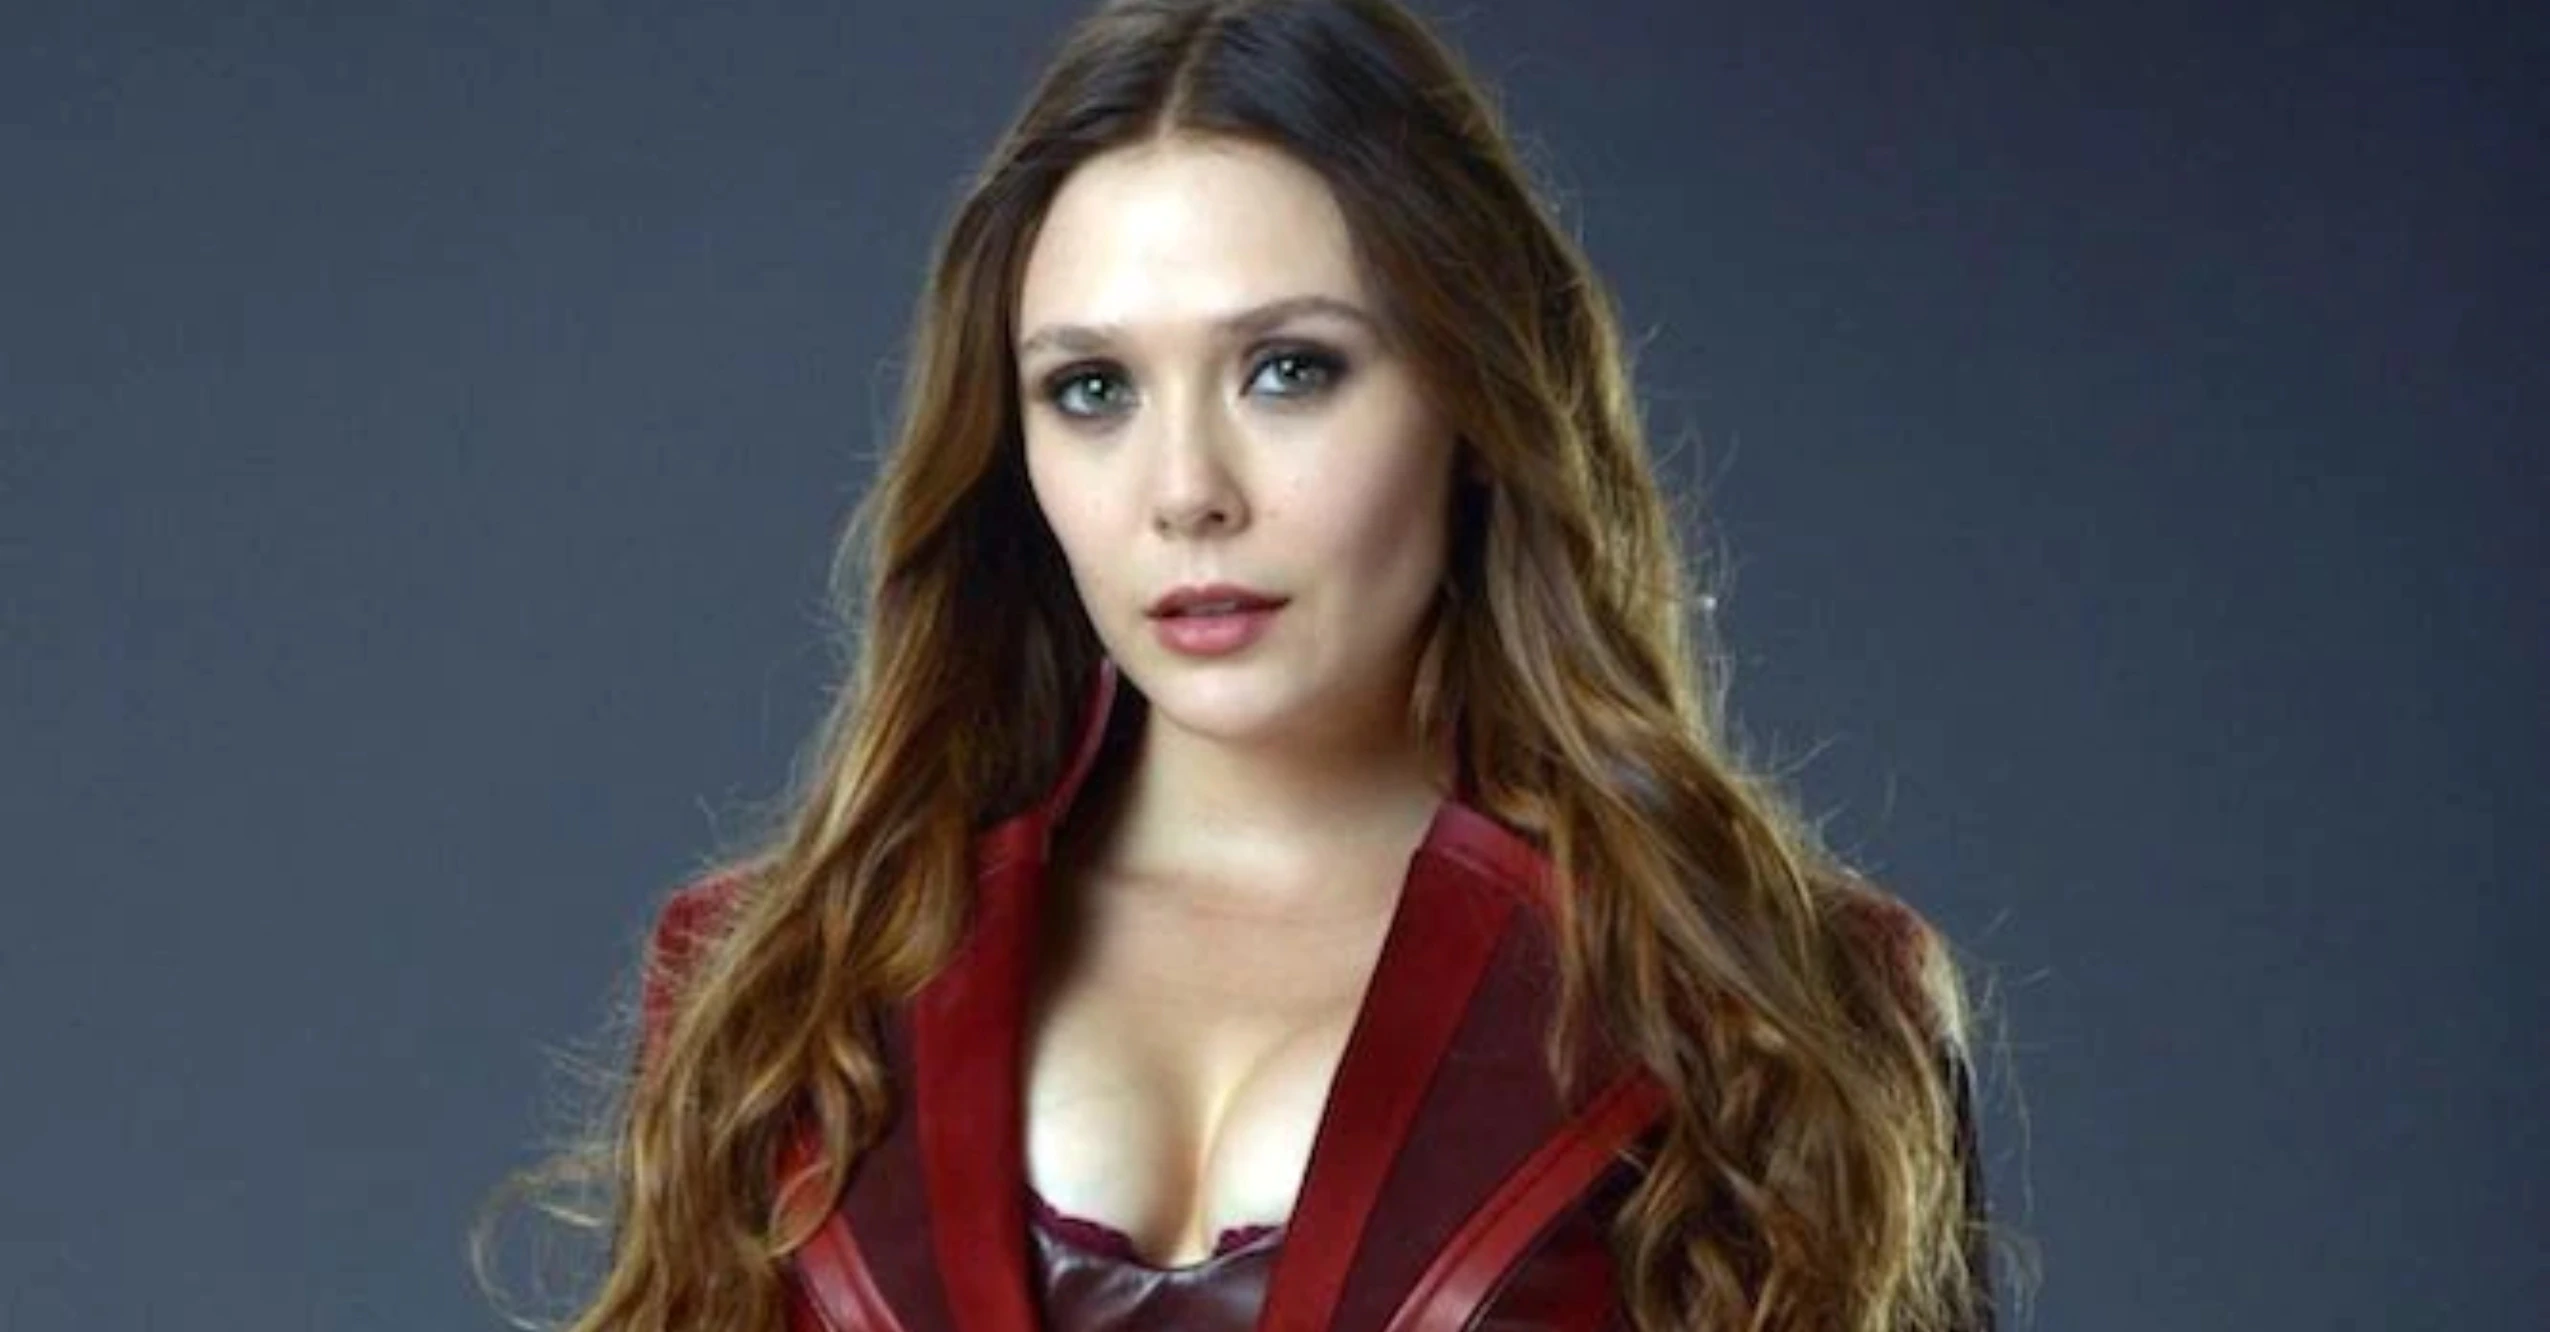 ‘Doctor Strange’ Actress Elizabeth Olsen Defends Marvel Movies Against Critics: ‘I Get a Little Feisty’